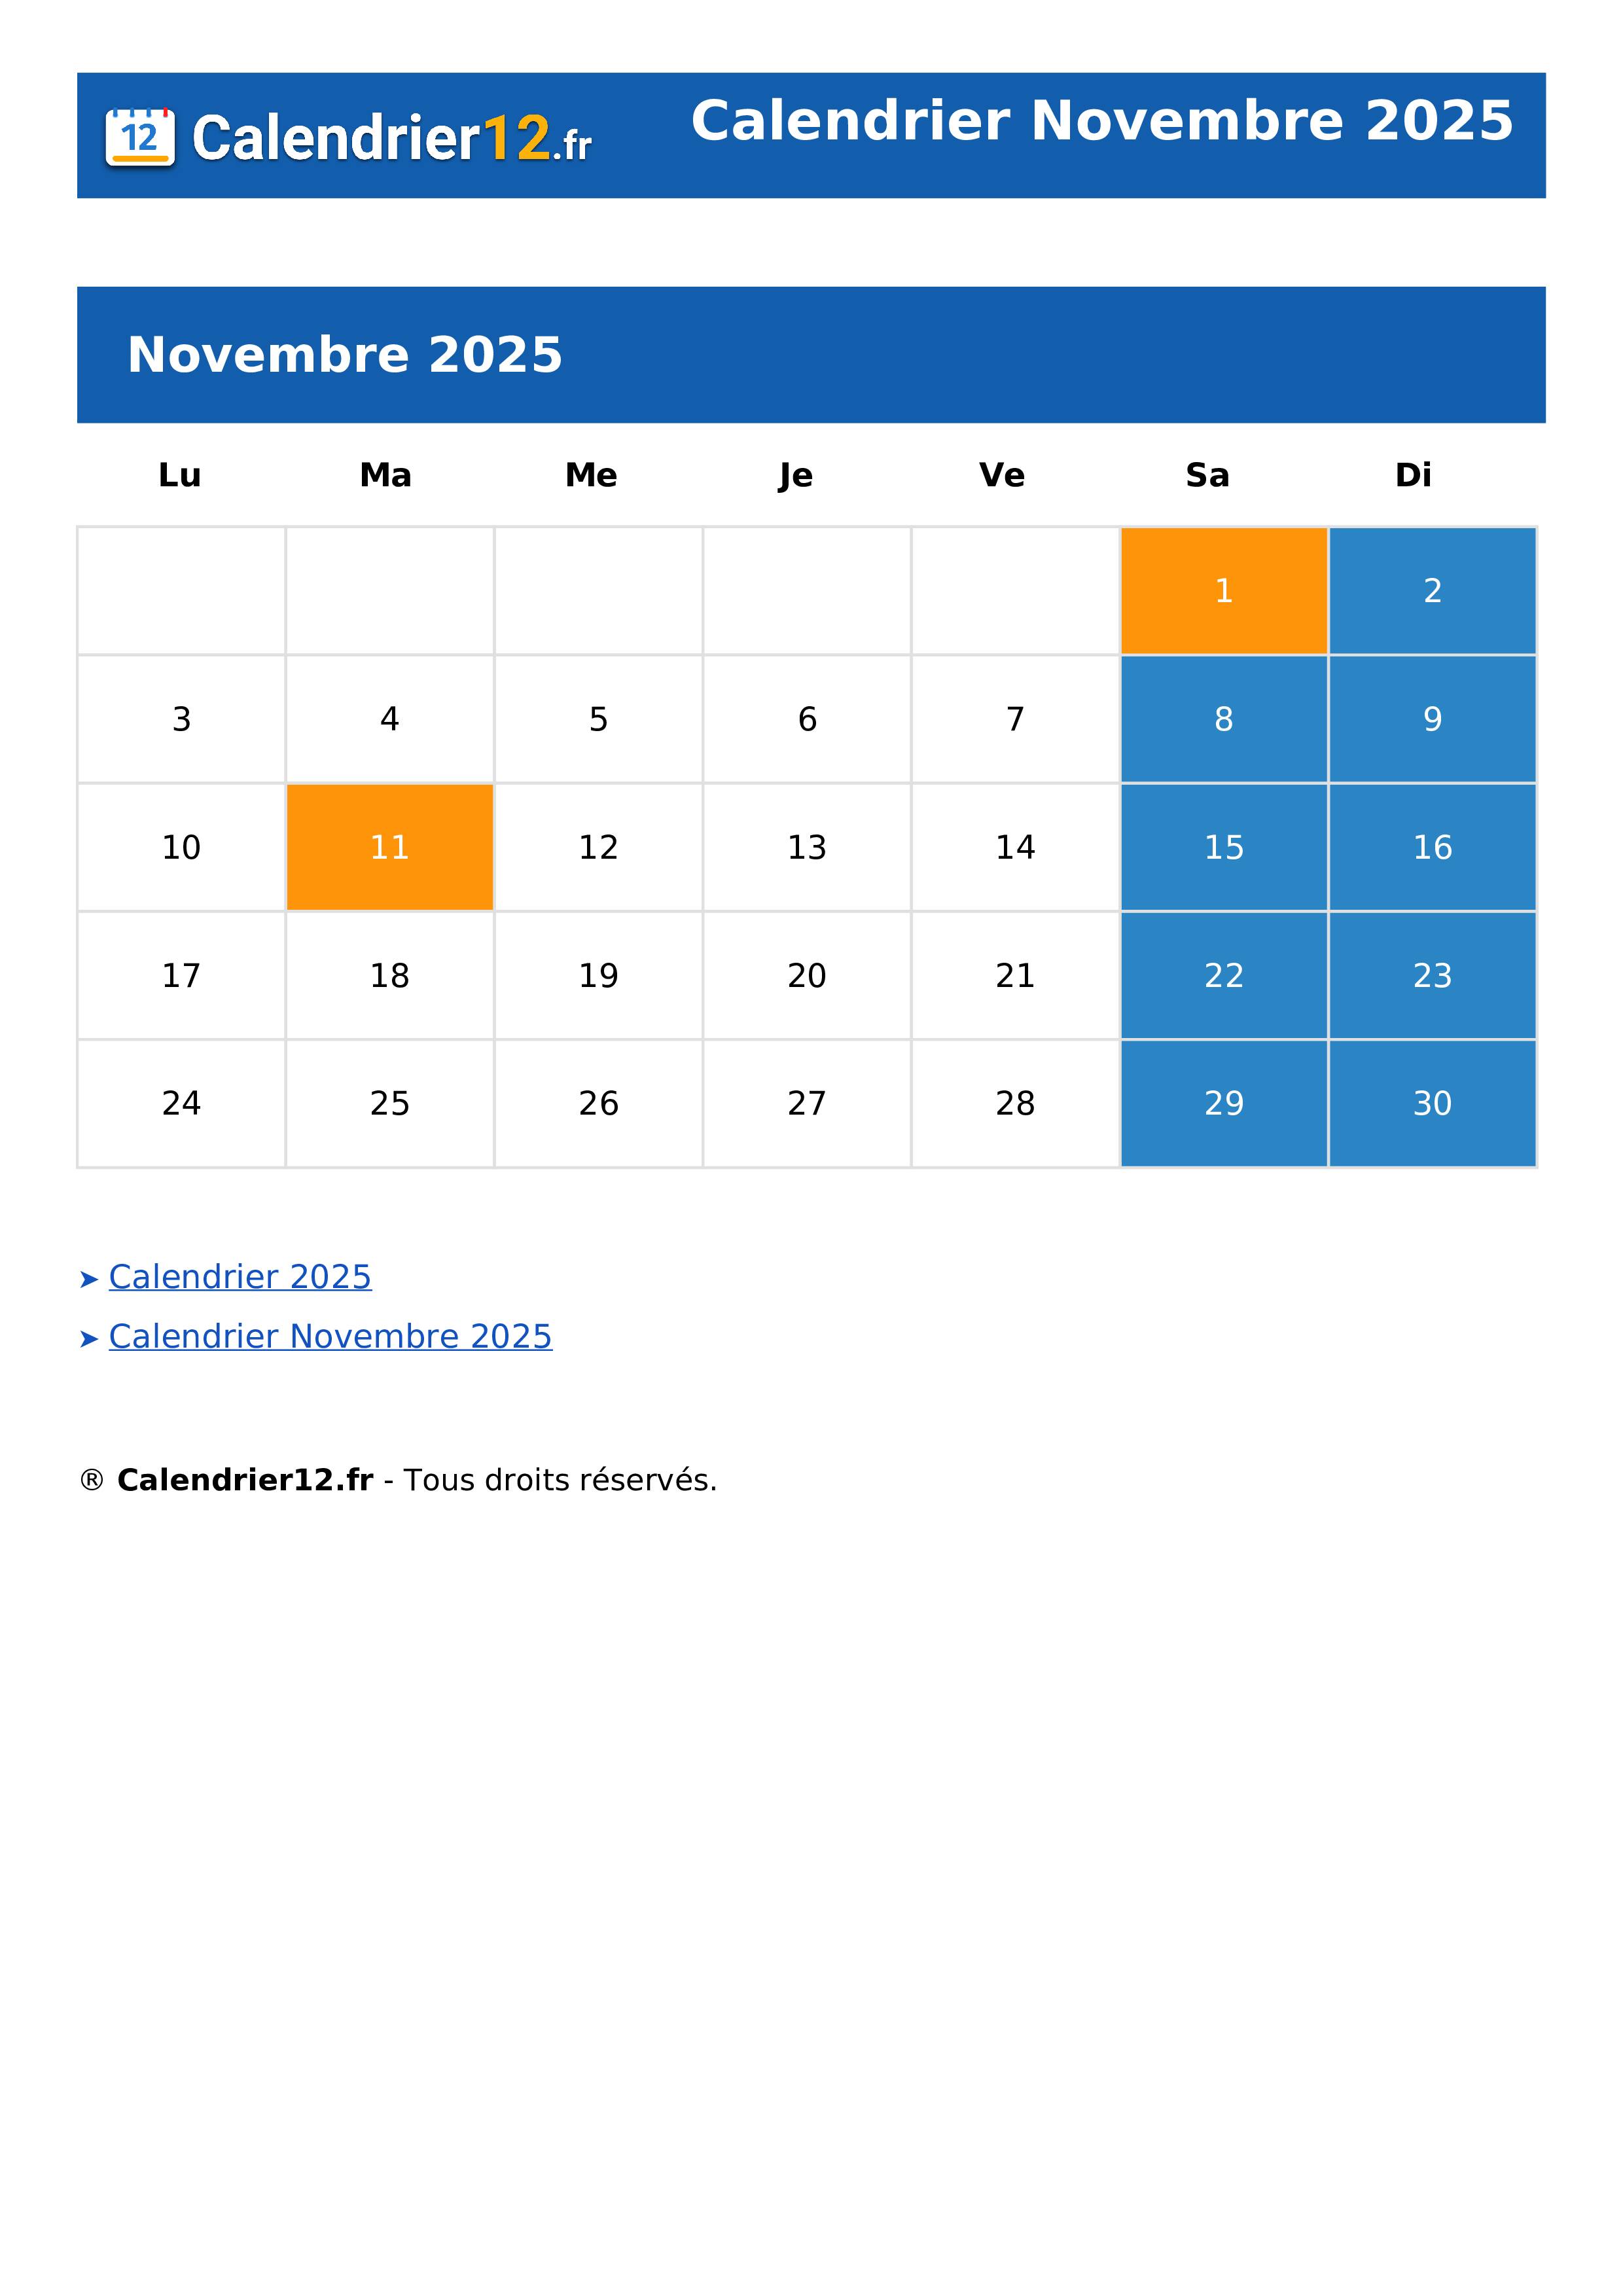 Calendrier Novembre 2025